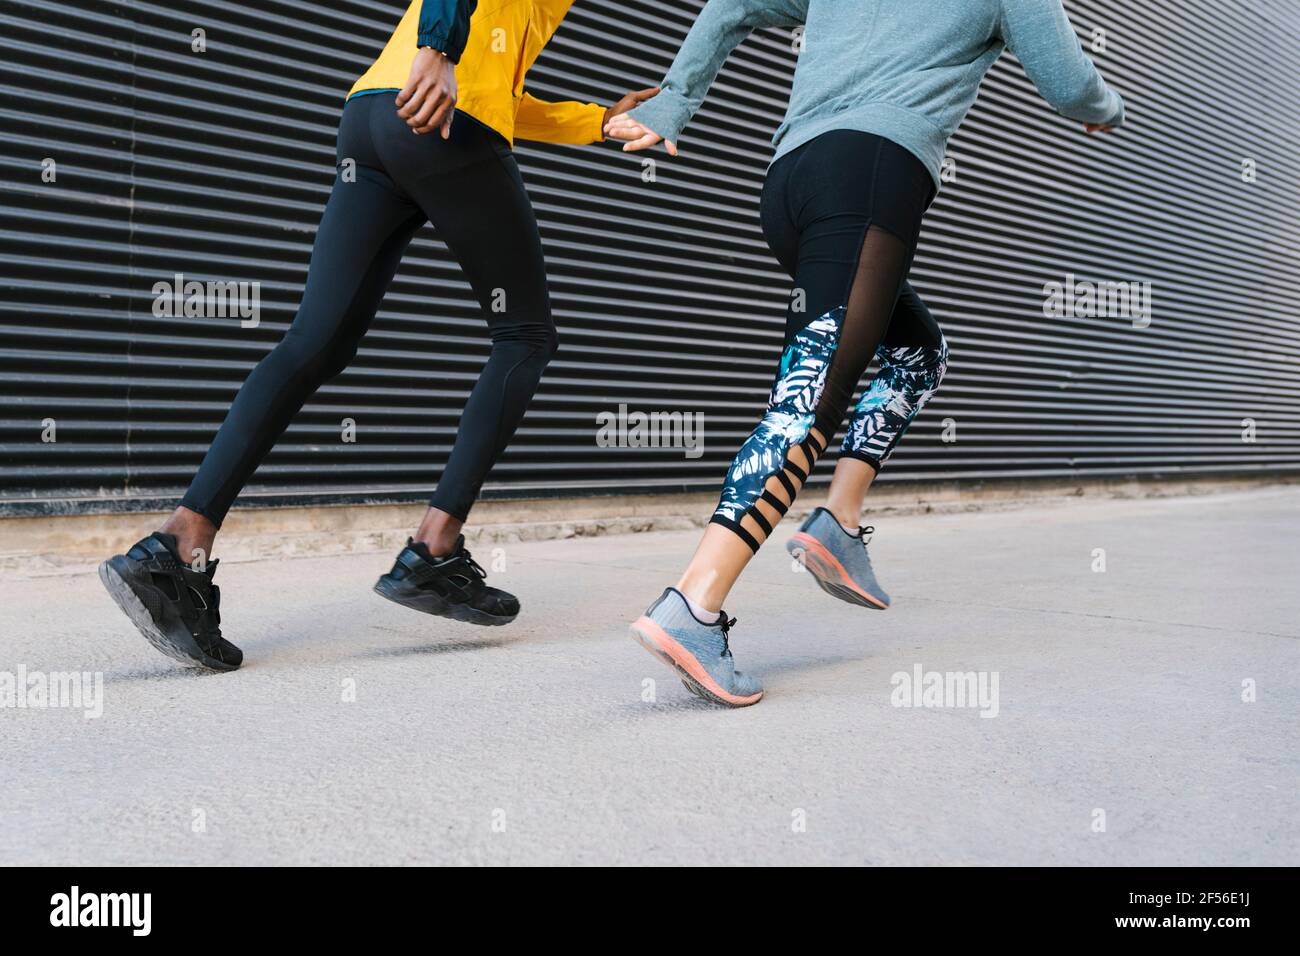 Eine Athletin und ein Athlet, die gemeinsam auf dem Bürgersteig an der Wand laufen Stockfoto